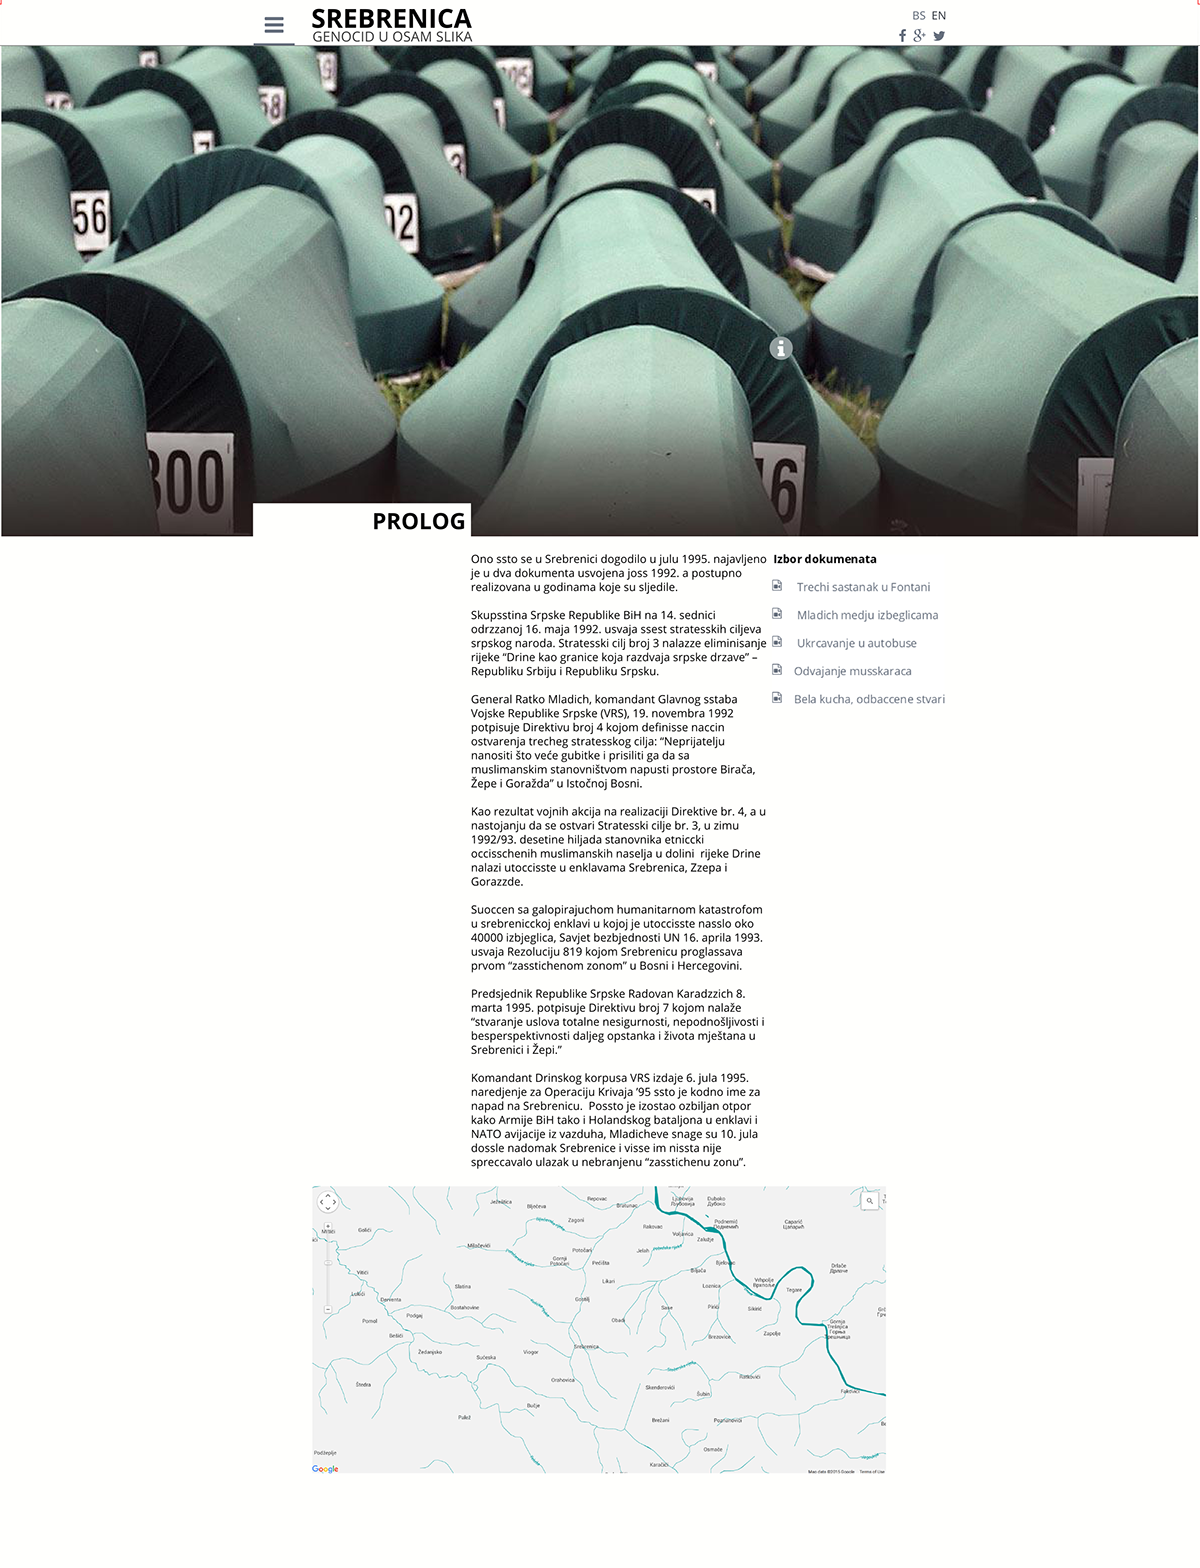 Srebrenica Web Design  ux web development  consultancy